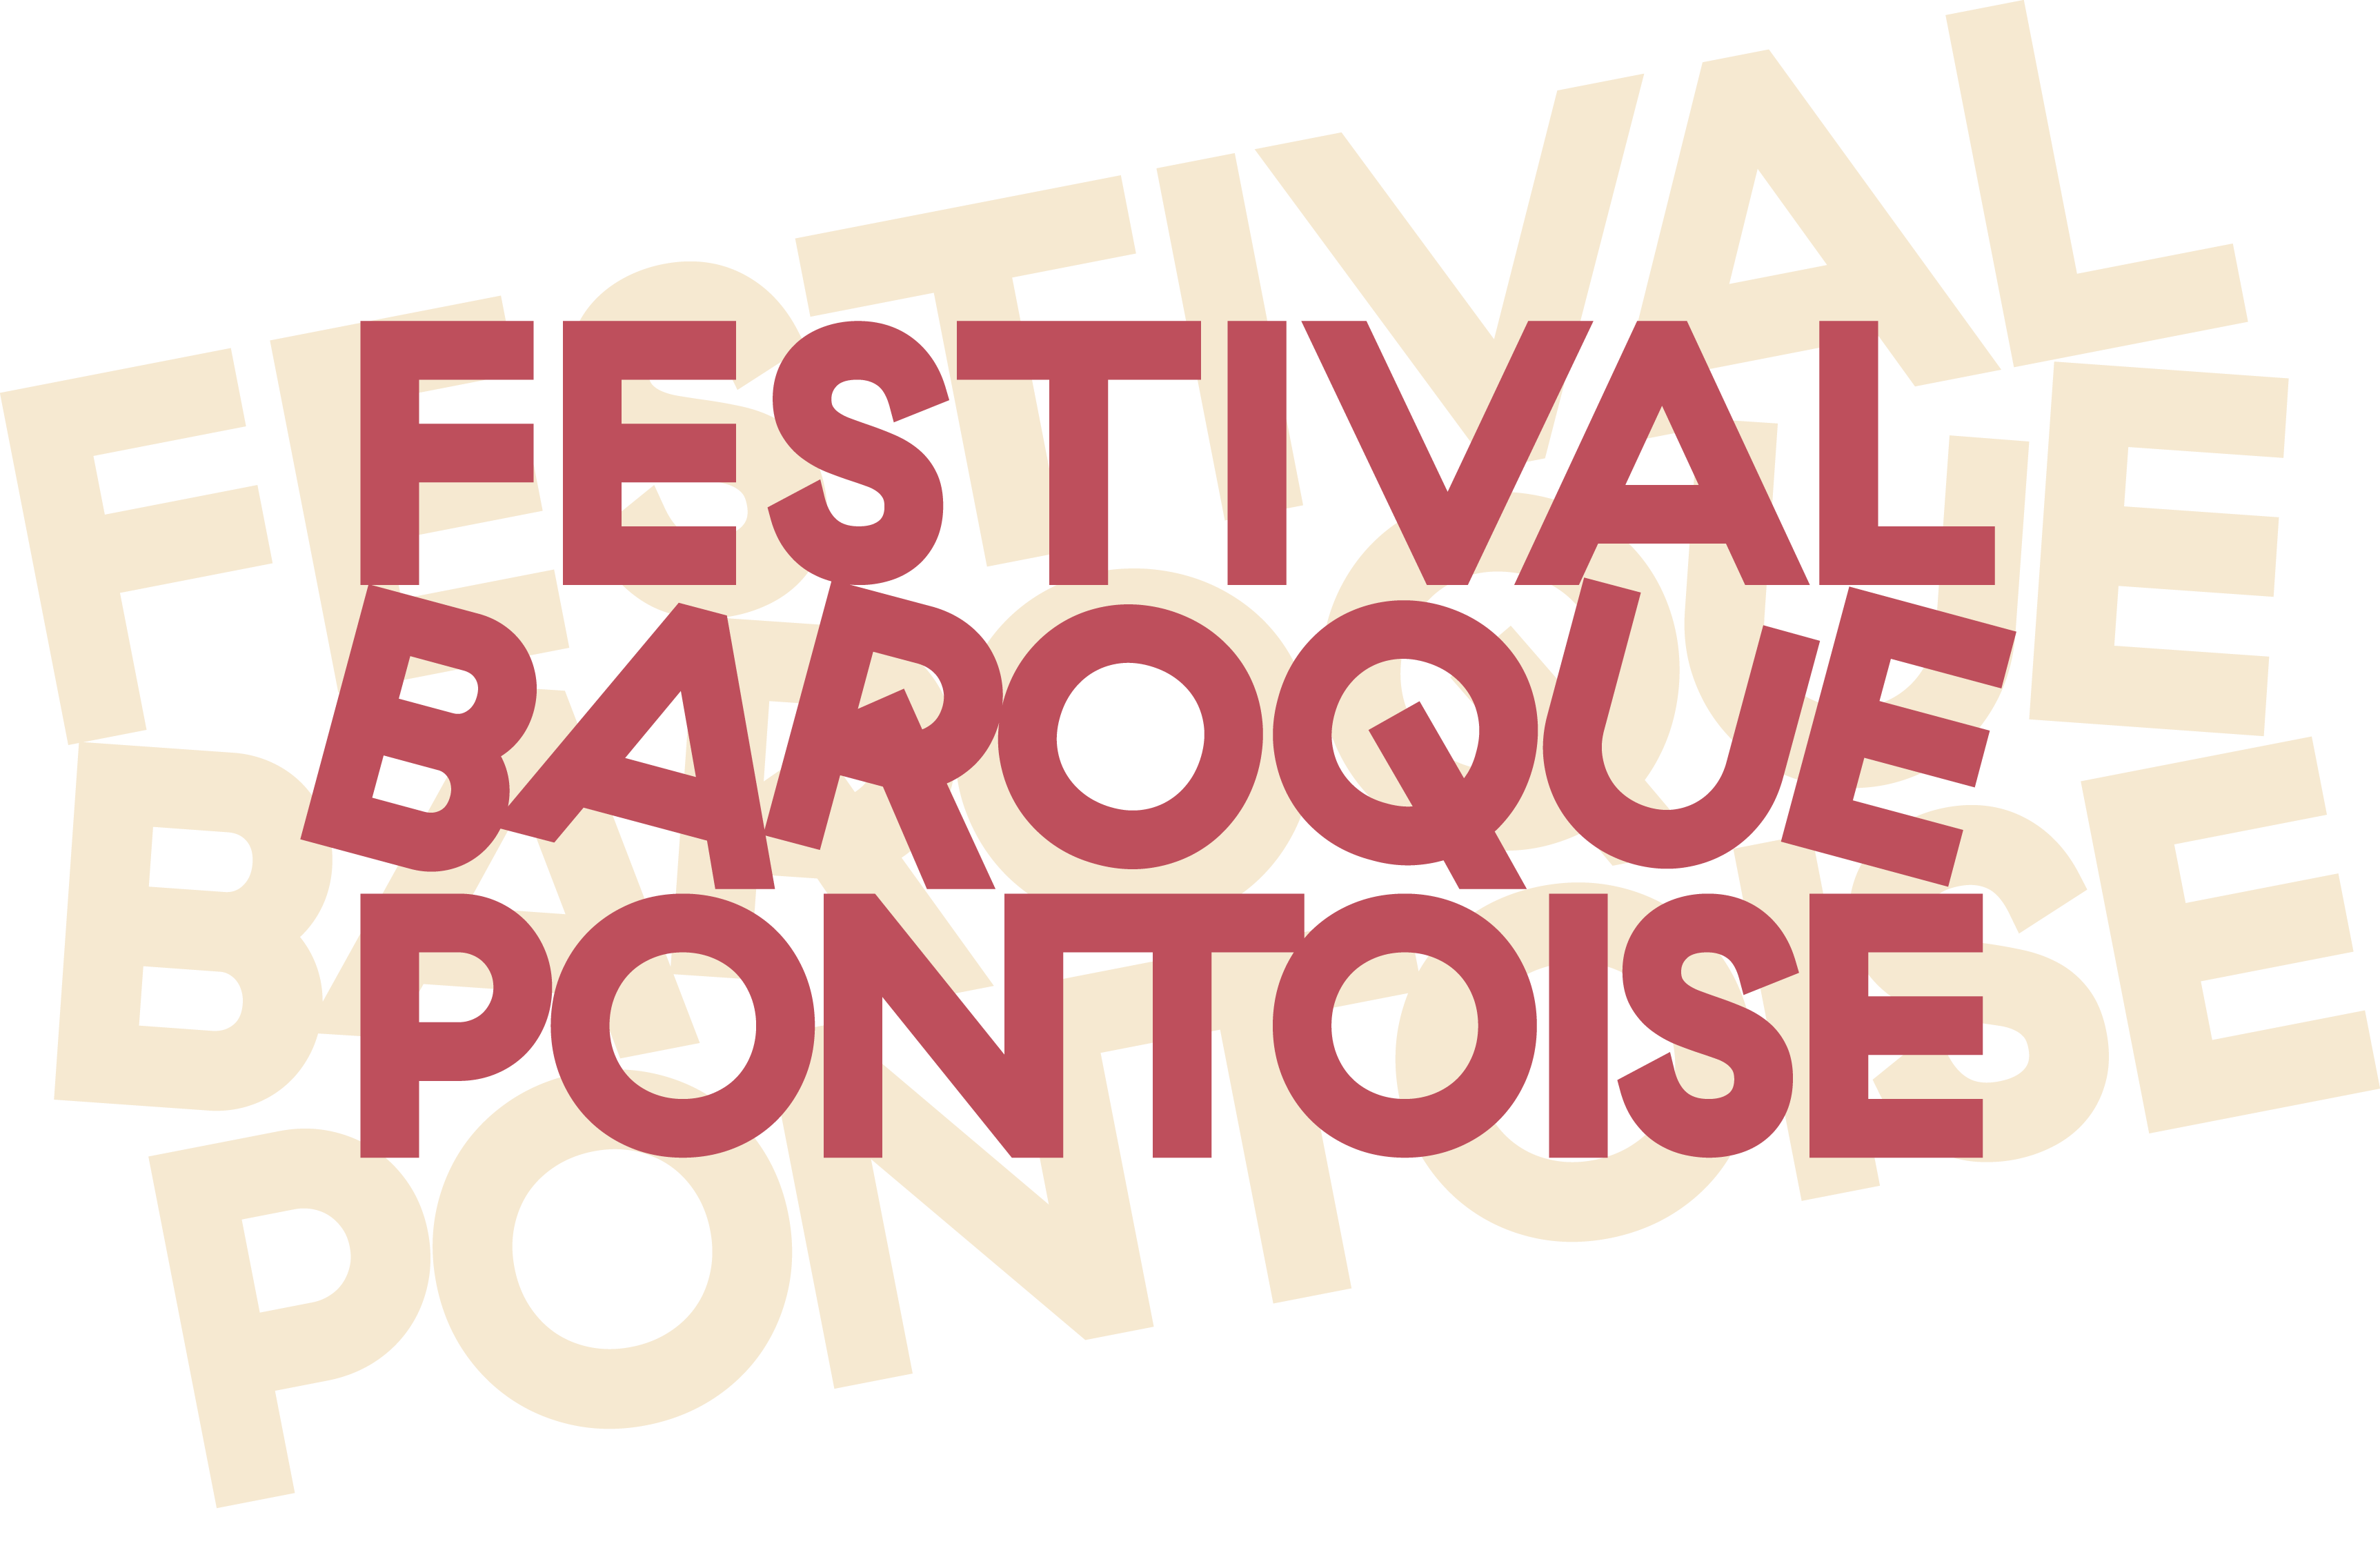 Festival Baroque de Pontoise